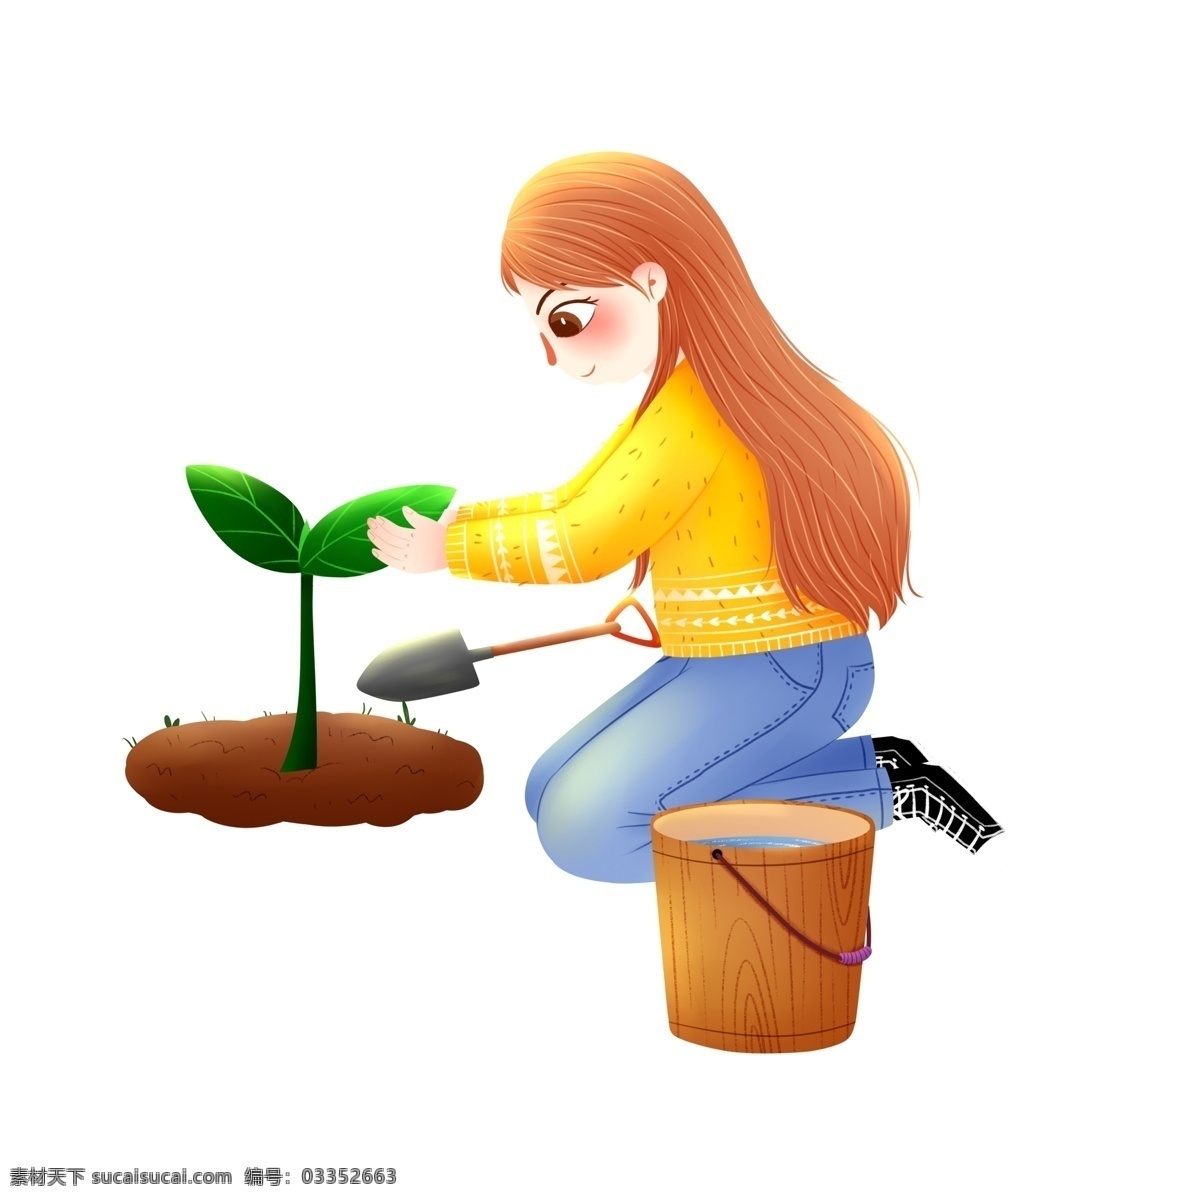 清新 手绘 种树 女孩子 唯美 治愈系 插画 卡通 植树 植树节 春季 小树苗 小铲子 水桶